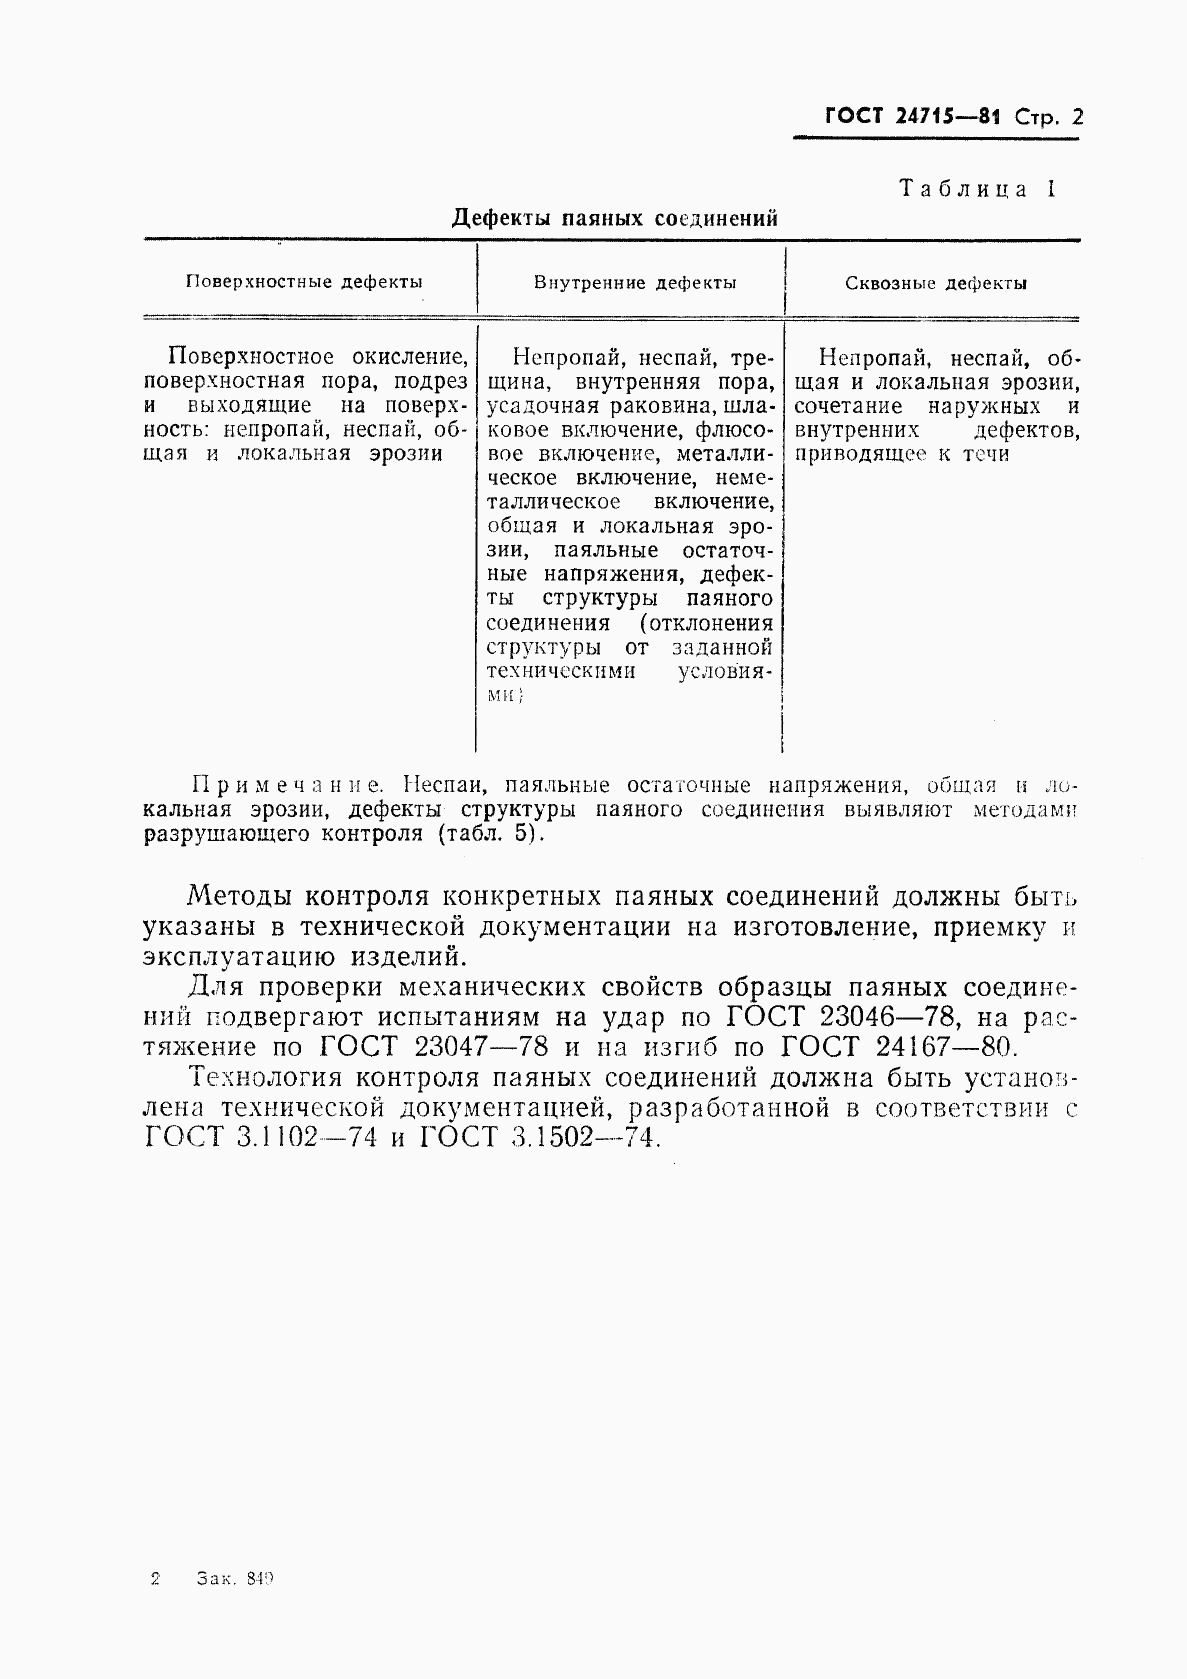 ГОСТ 24715-81, страница 3